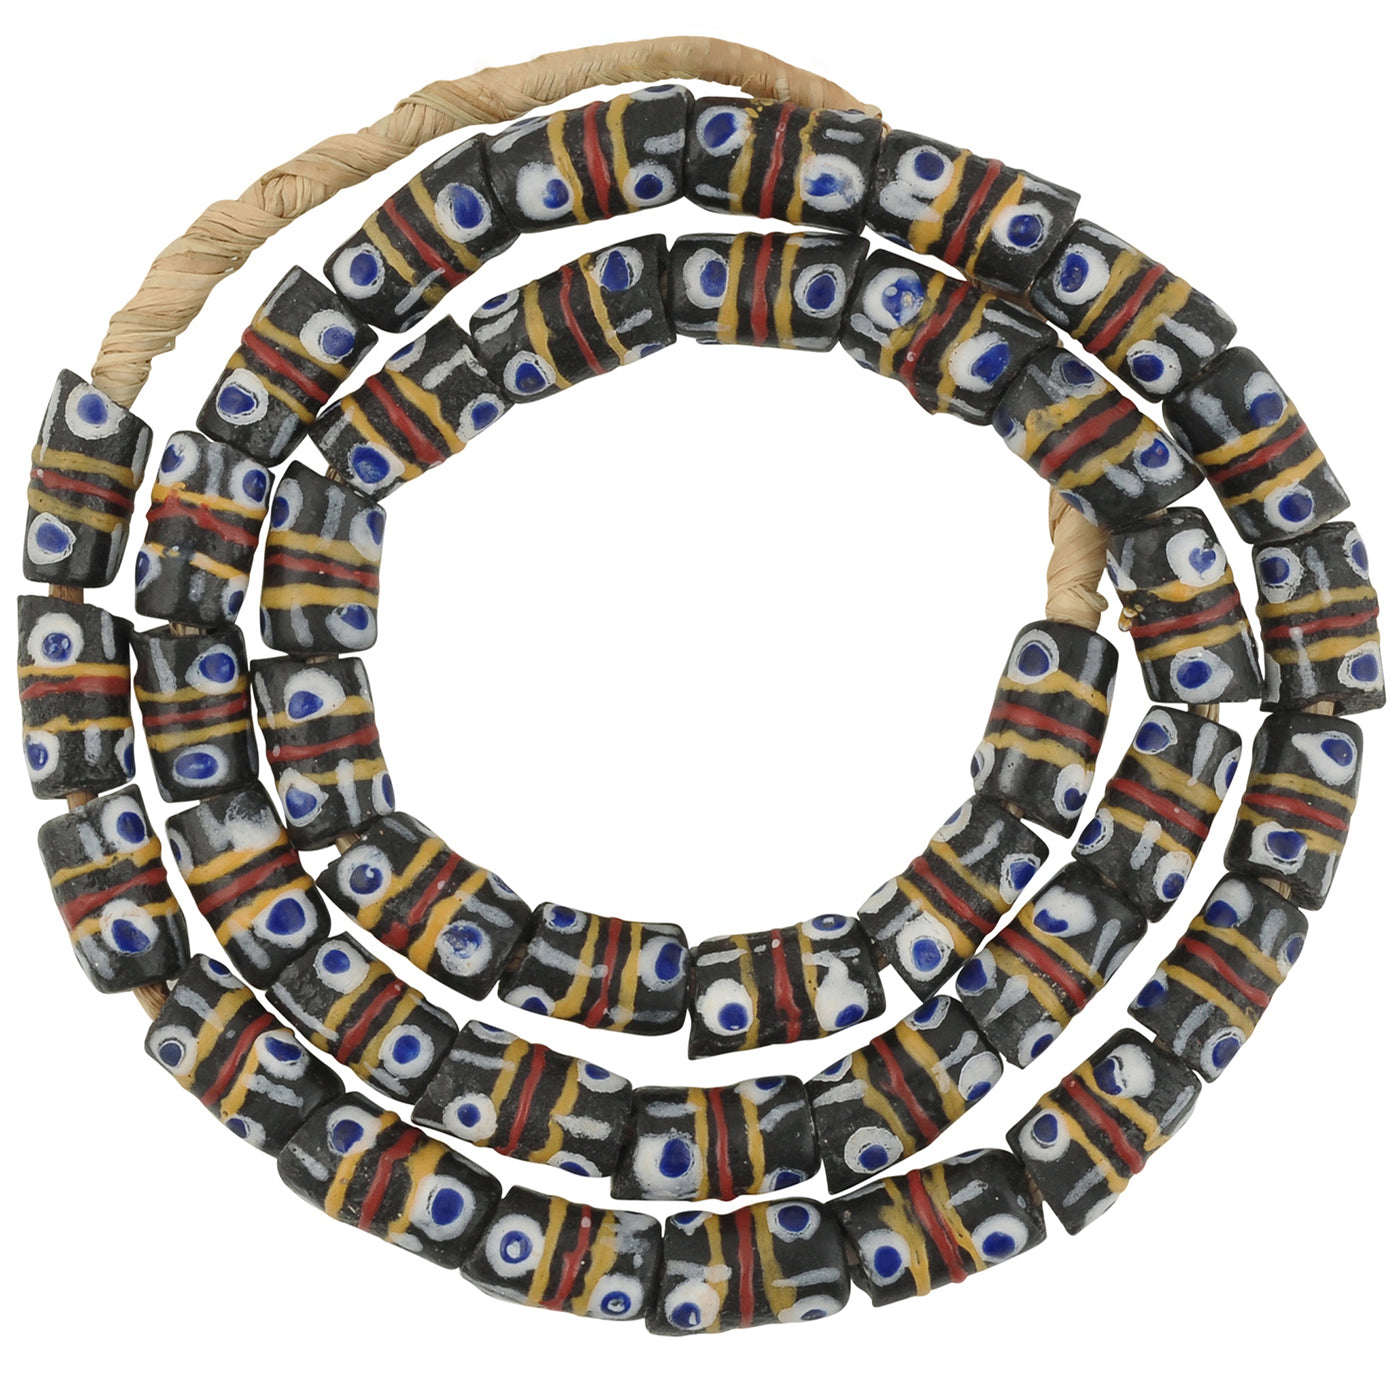 Handgemachte ethnische afrikanische Halskette aus recycelten Pulverglasperlen - Tribalgh